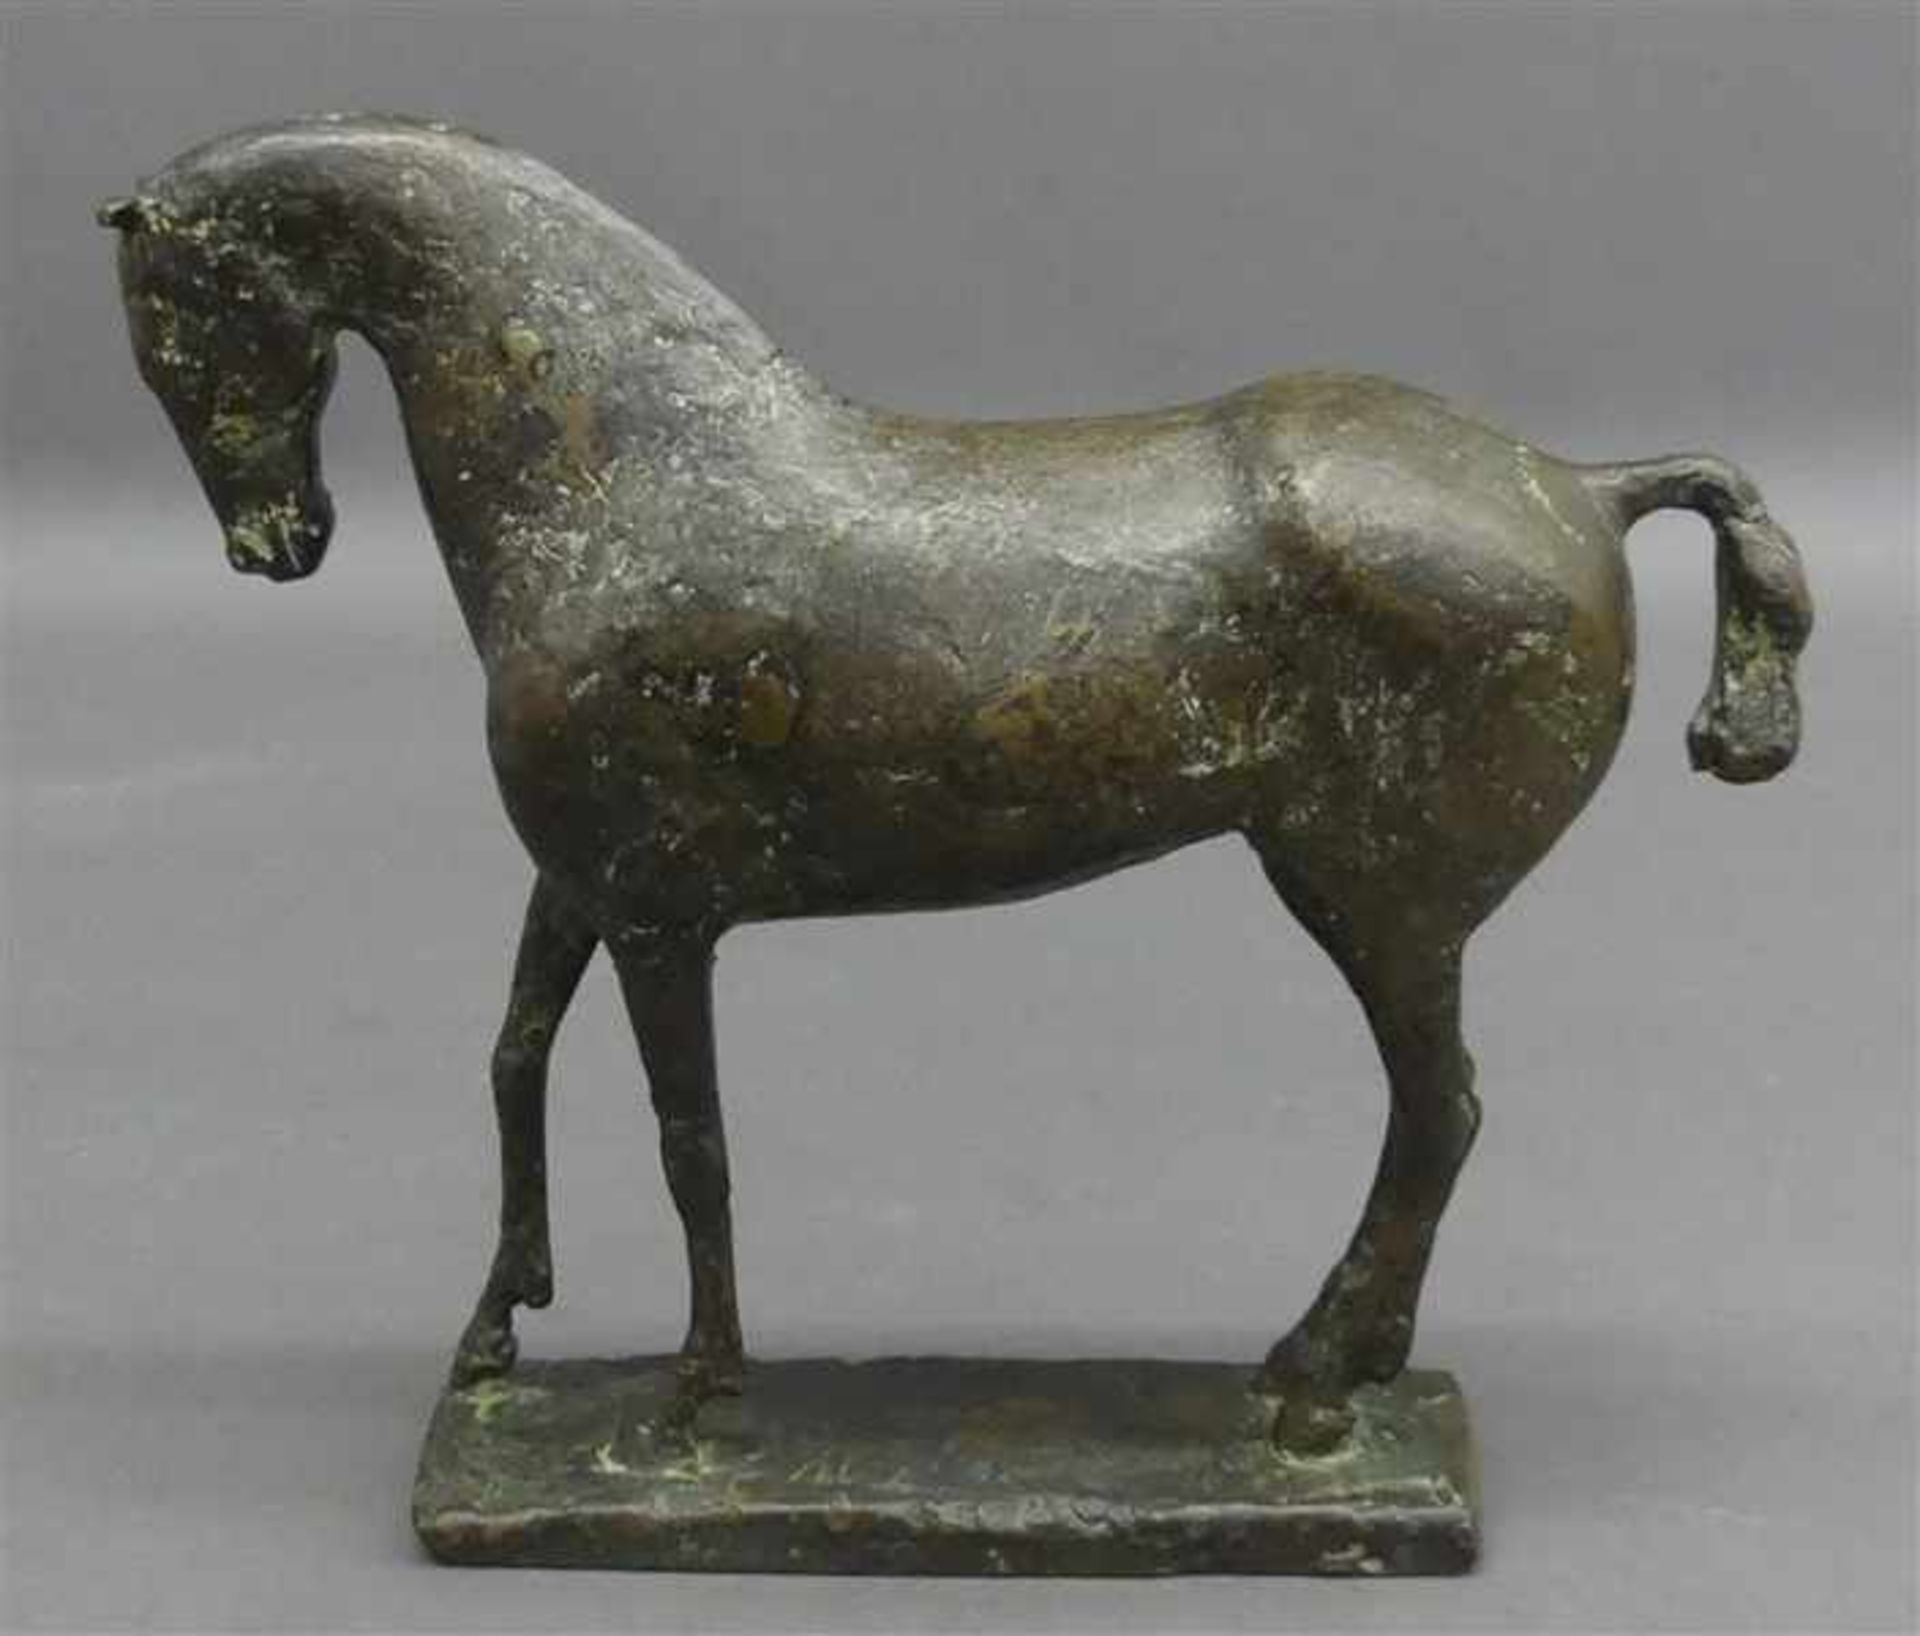 Bronzeskulptur20. Jh., Pferd, unleserlich signiert, moderne Ausformung, h 21 cm,- - -20.00 % buyer's